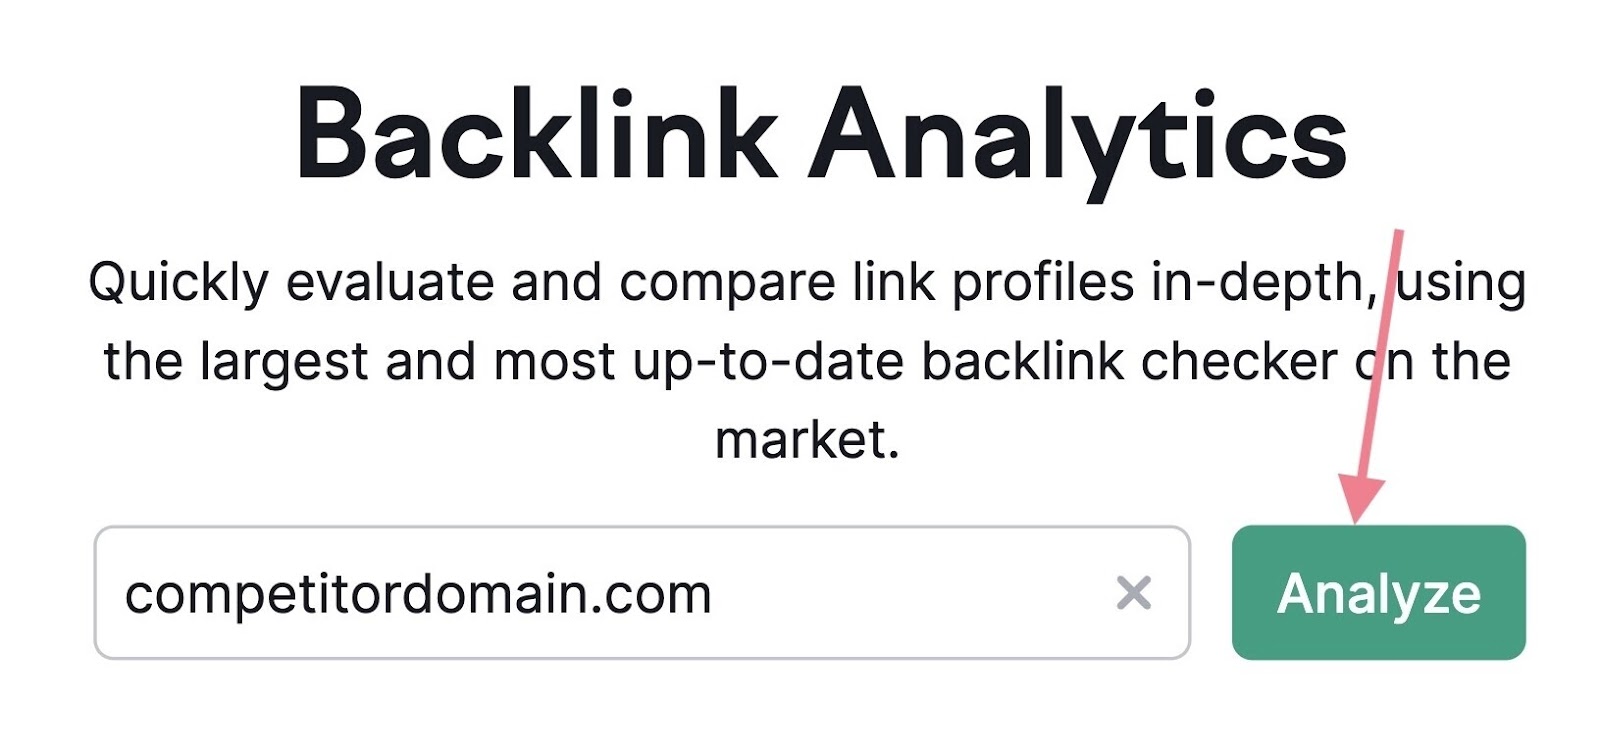 domaine concurrent de loutil danalyse de backlinks